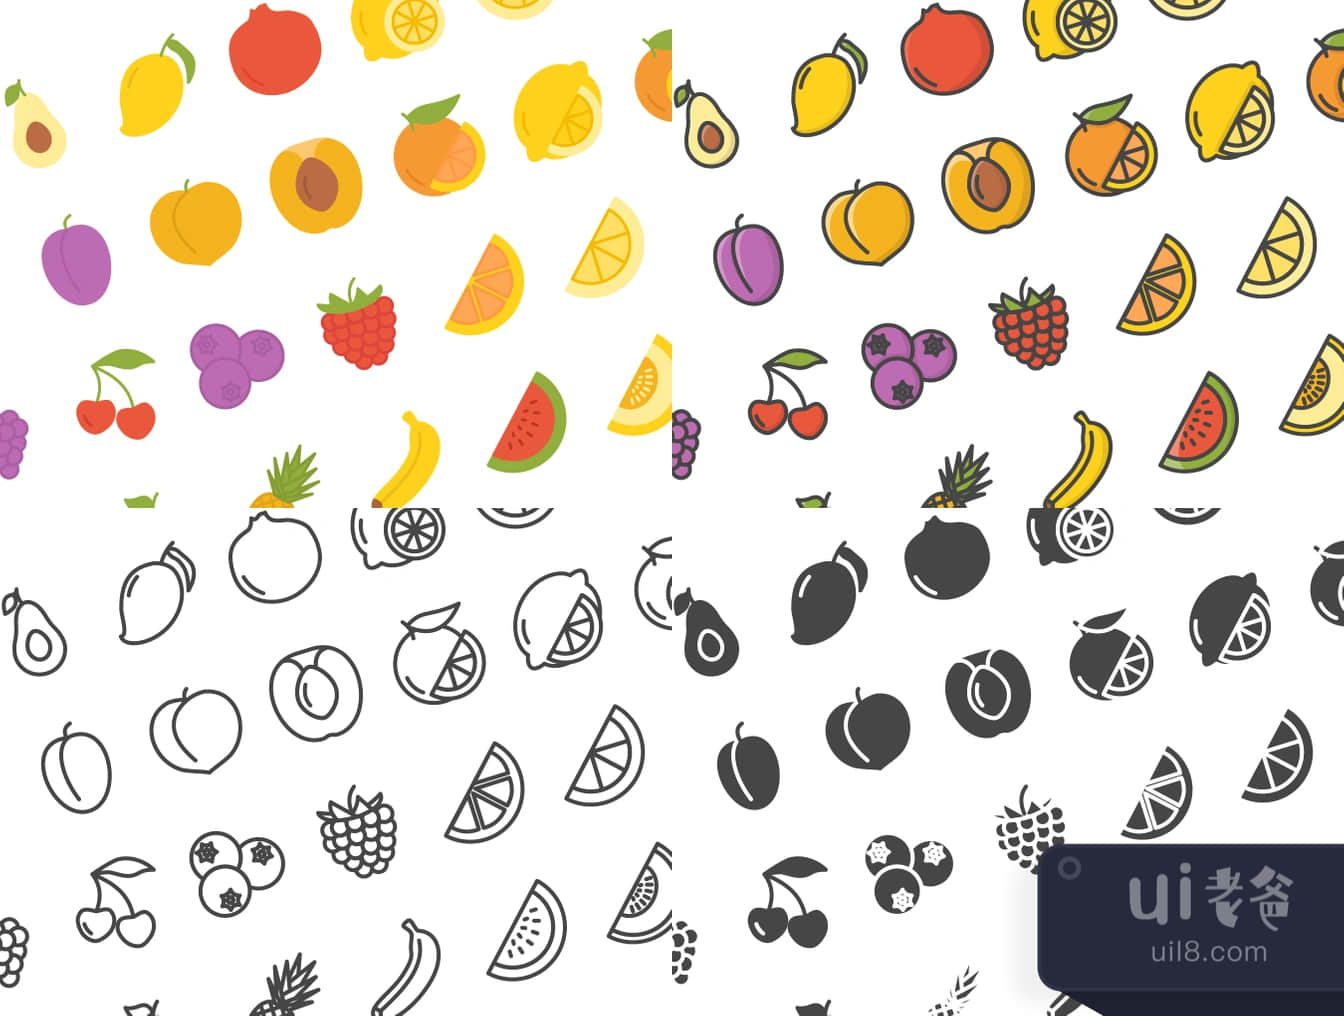 112个水果图标 (112 Fruits Icons)插图1